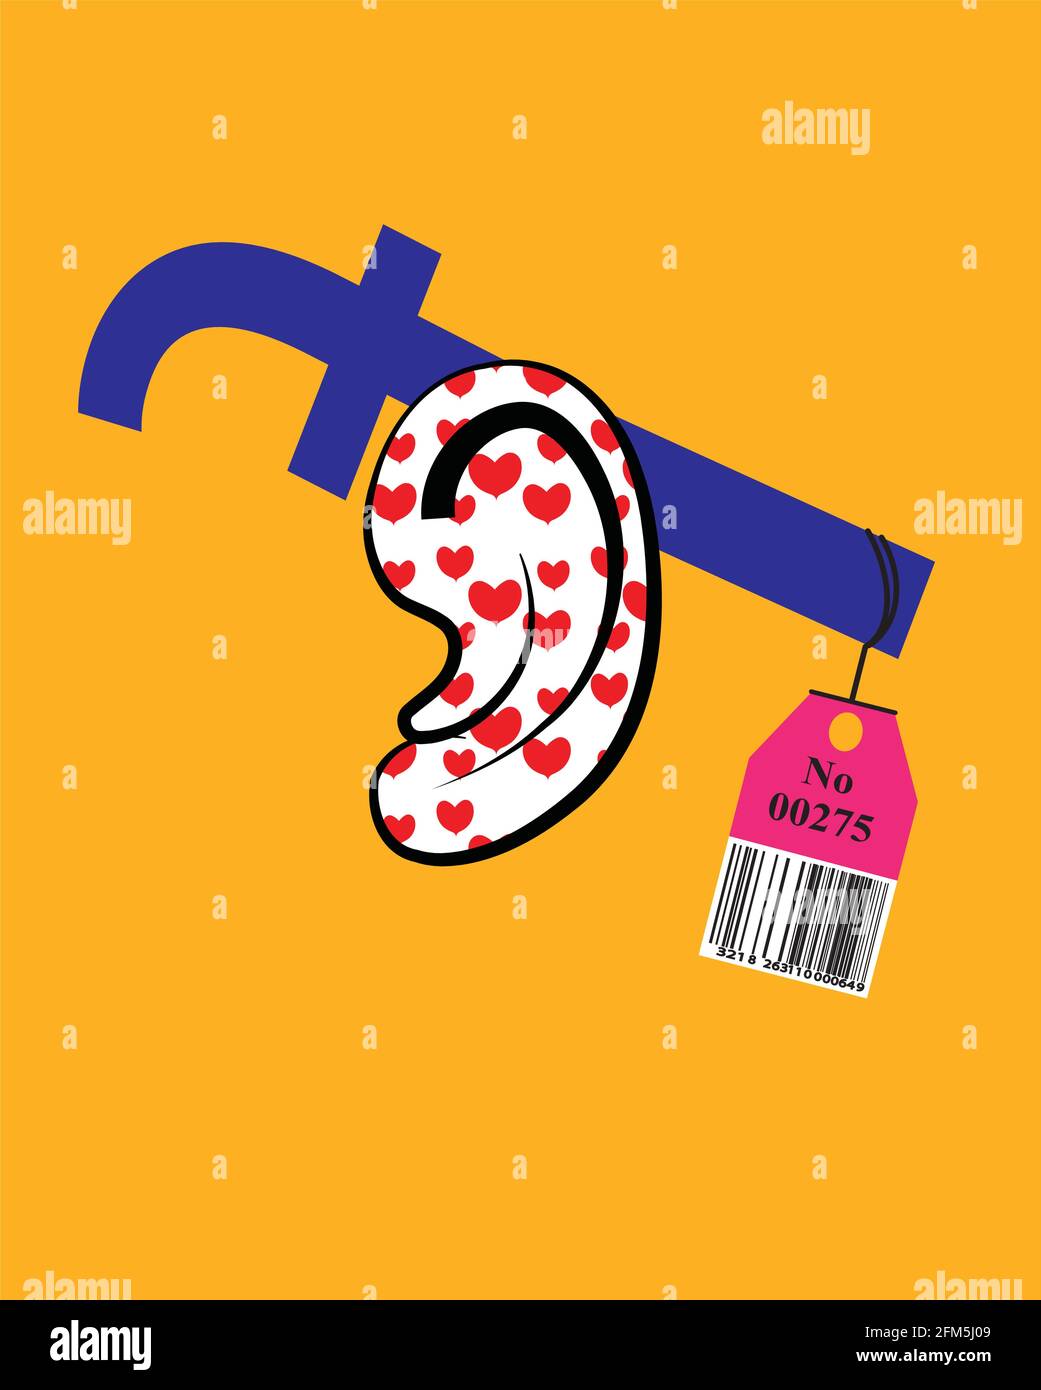 illustrazione del logo facebook sopra l'orecchio che mostra il suo valore, isolato su uno sfondo giallo Illustrazione Vettoriale